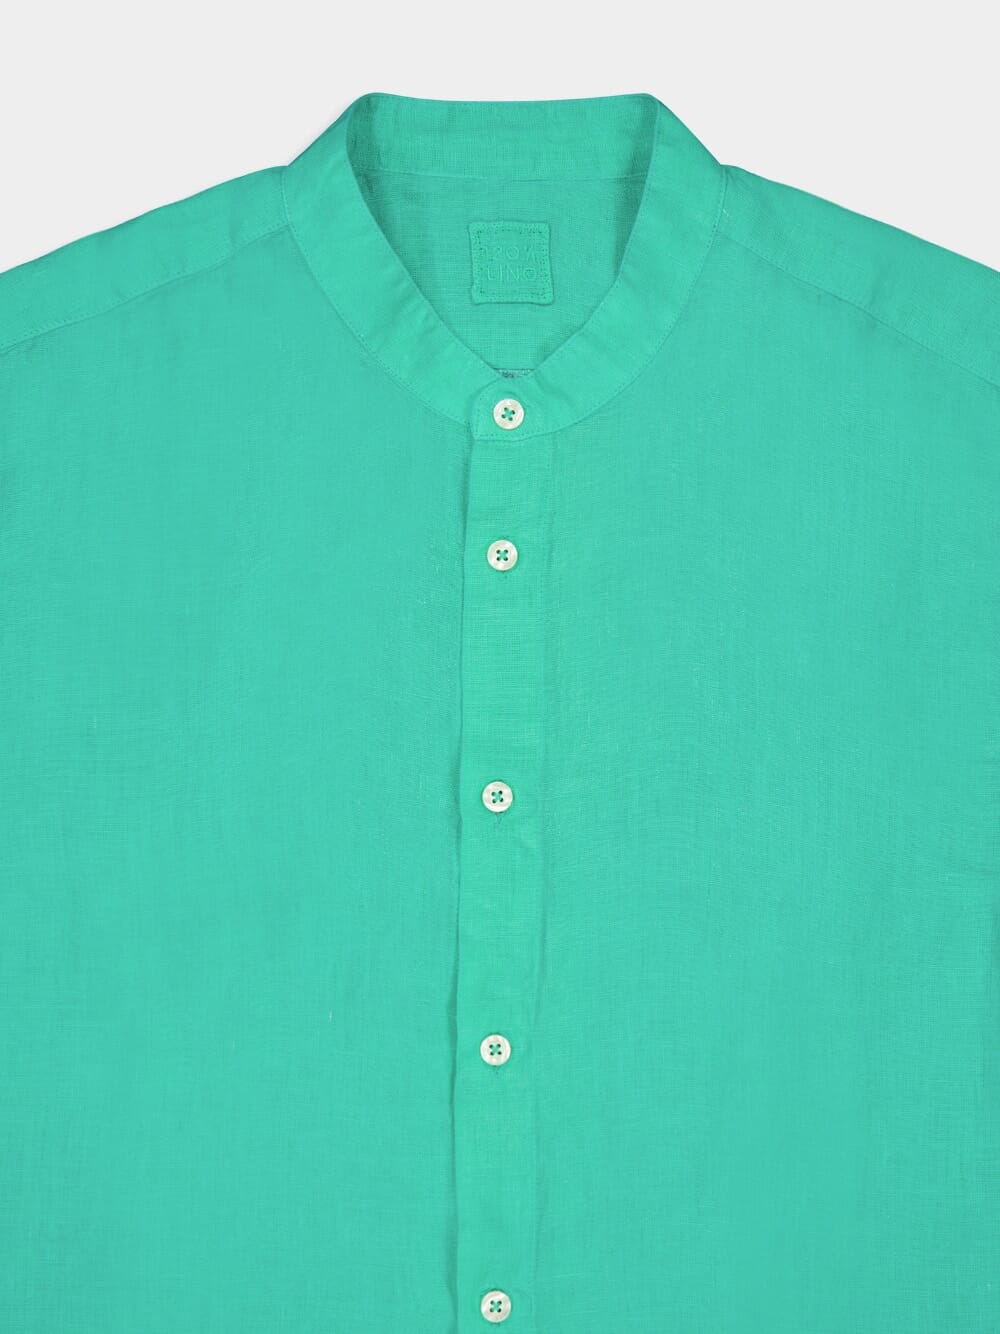 Band-Collar Green Linen Shirt